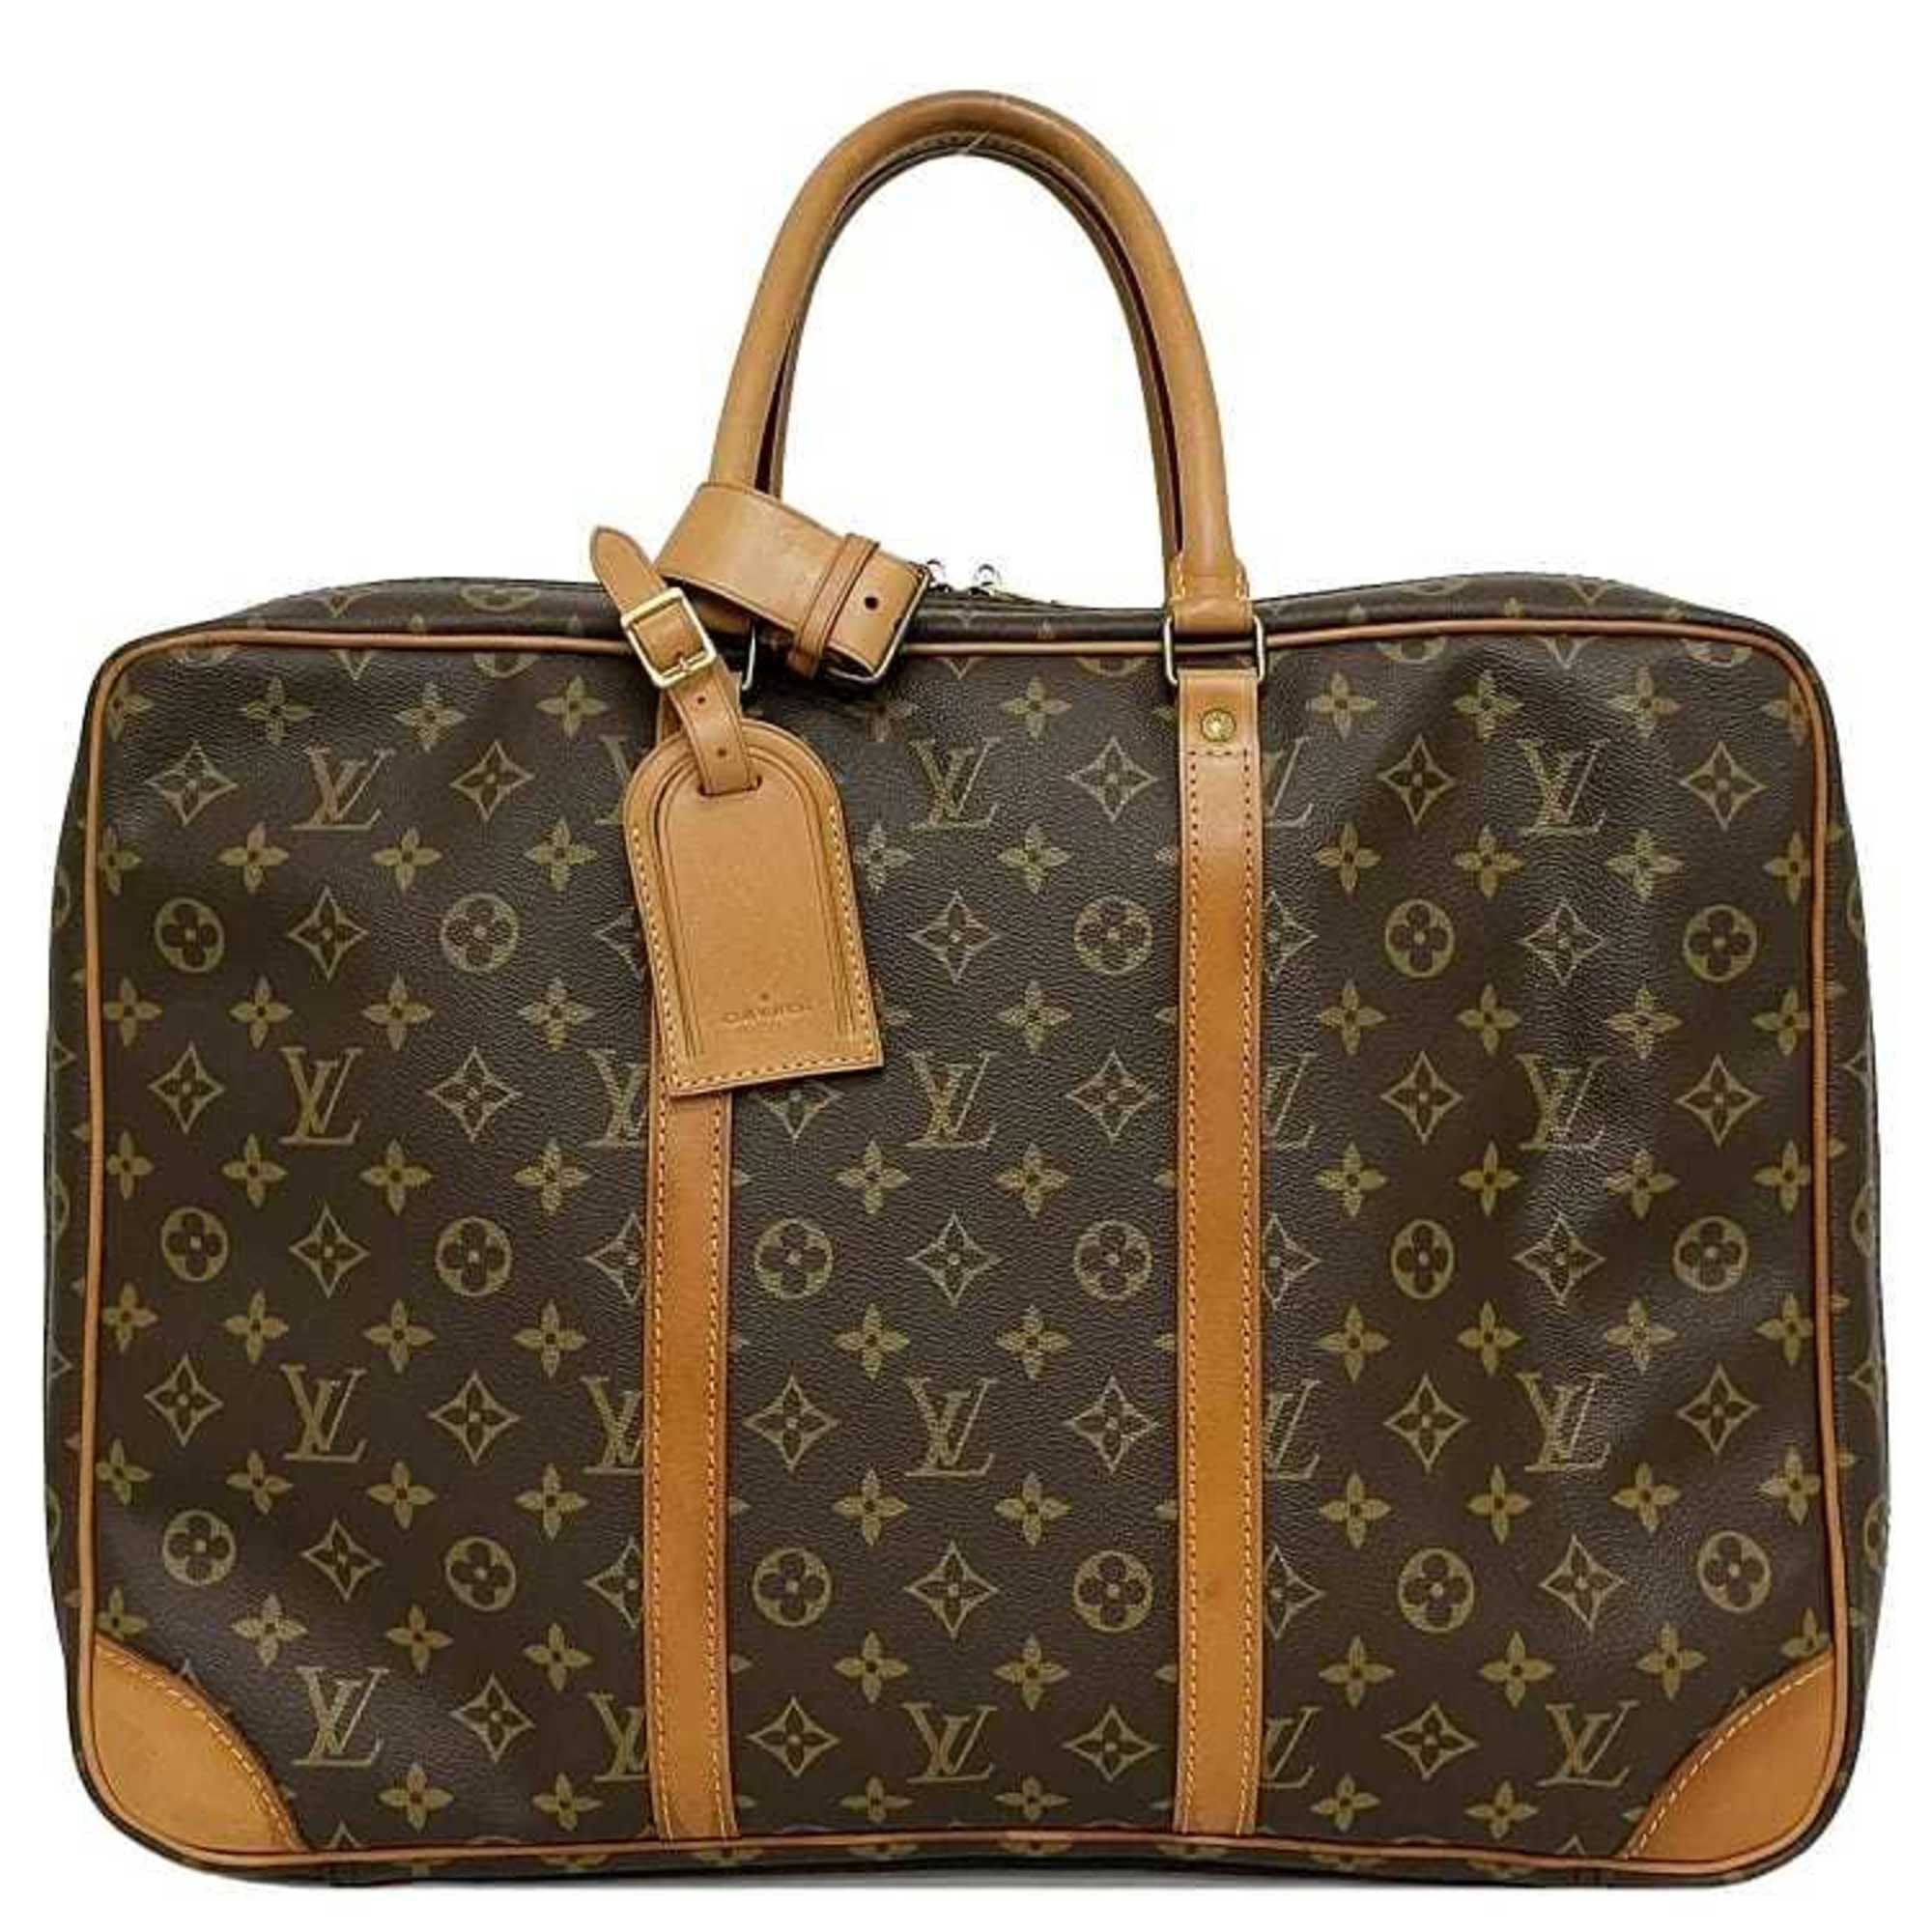 Louis Vuitton Boston Bag Sirius 45